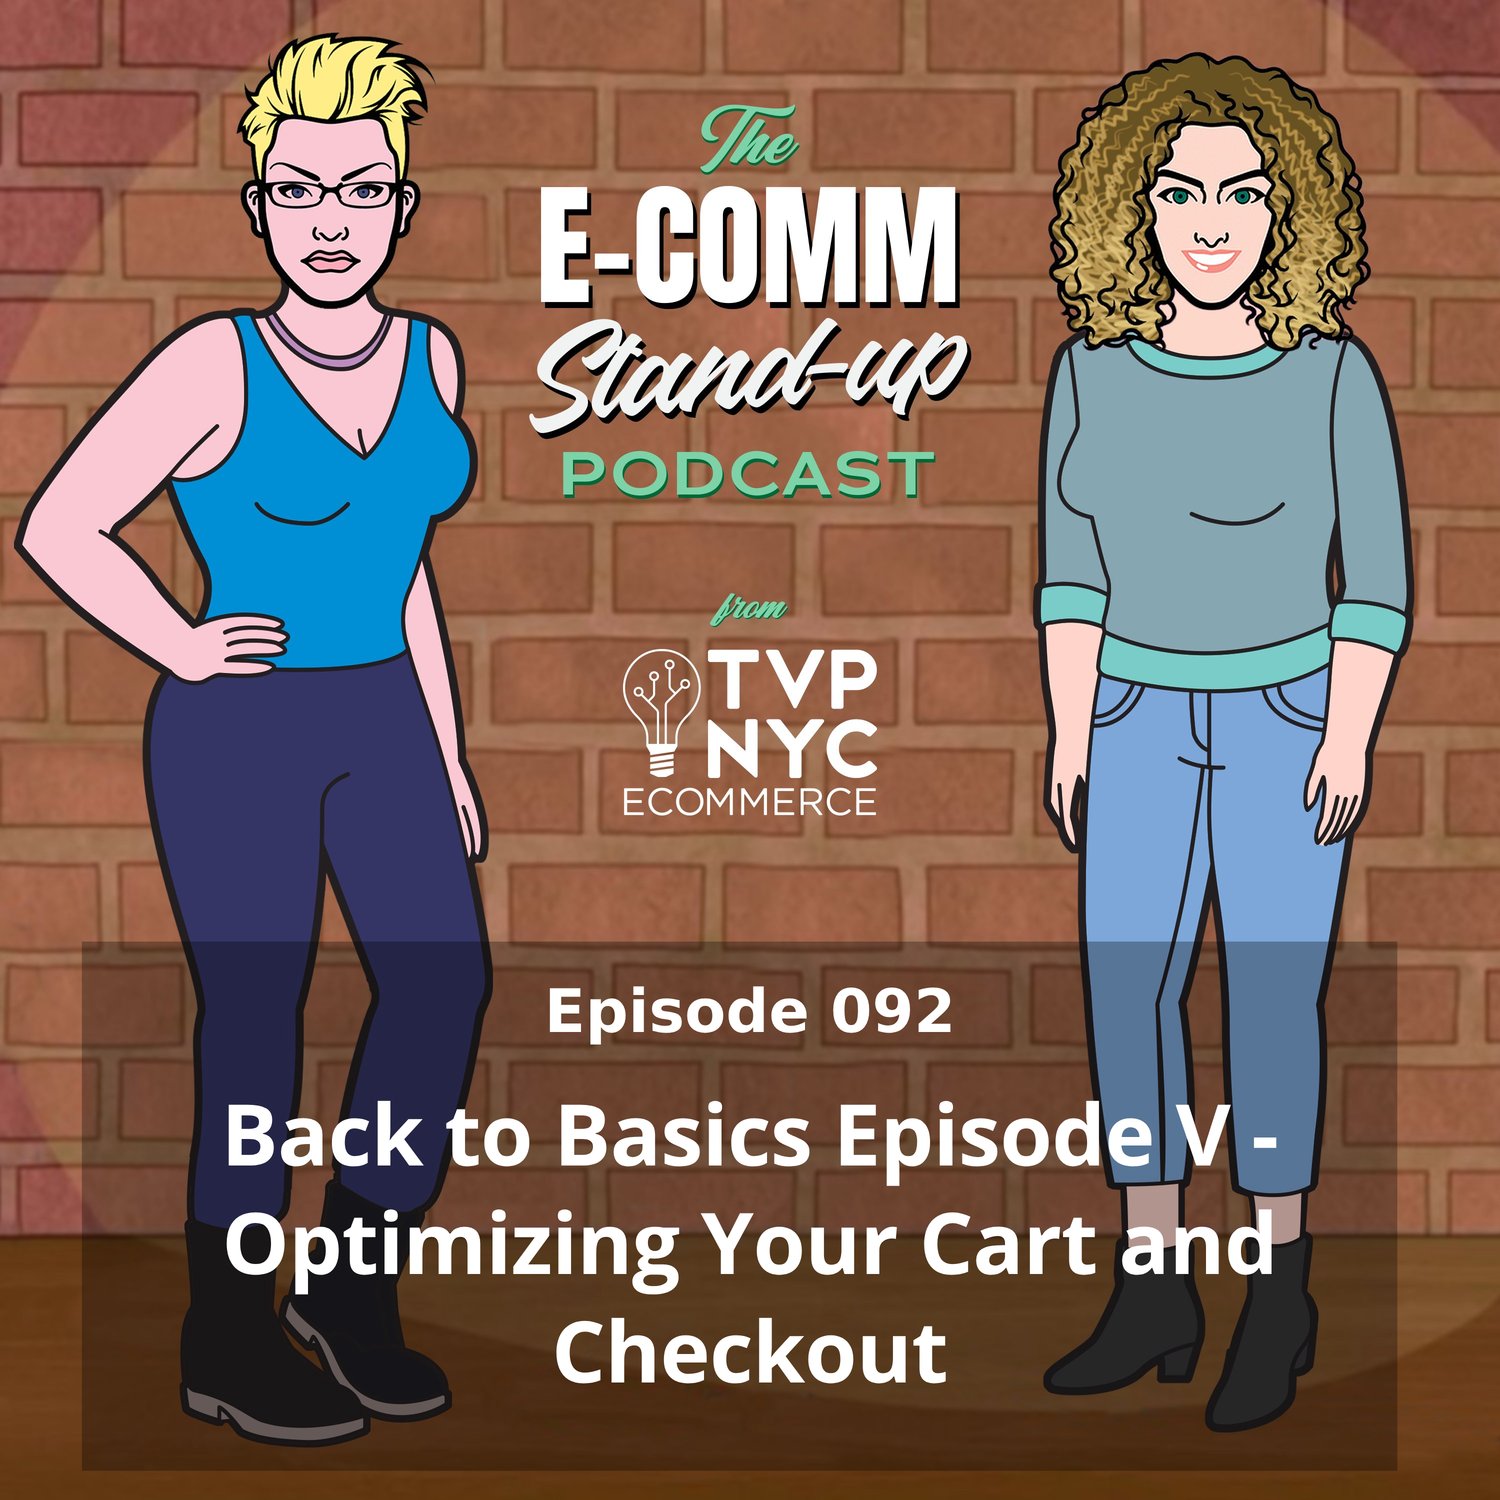 Back to Basics Episode V - Optimizing Your Cart and Checkout